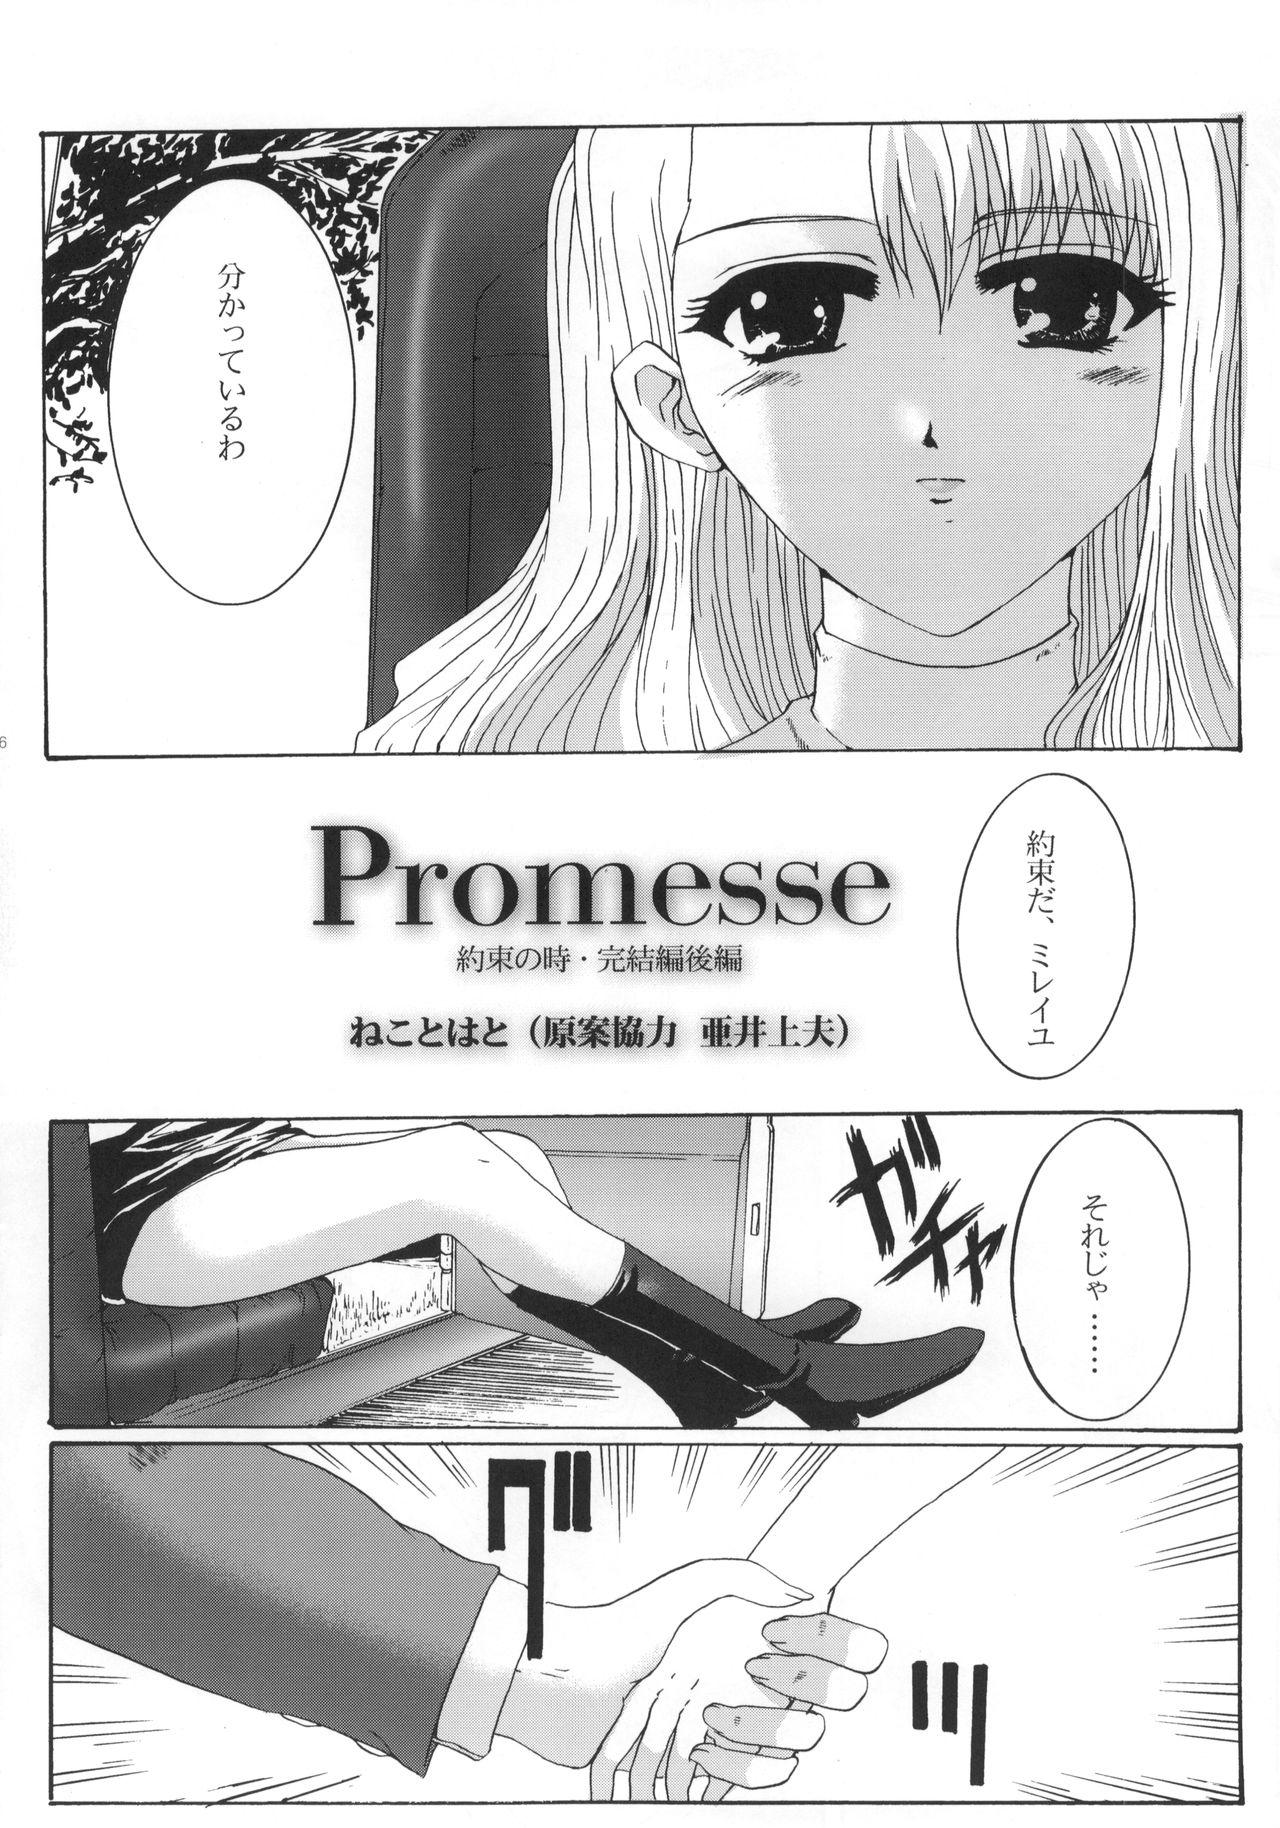 Promesse III Yakusoku no Toki Kanketsuhen Kouhen 6